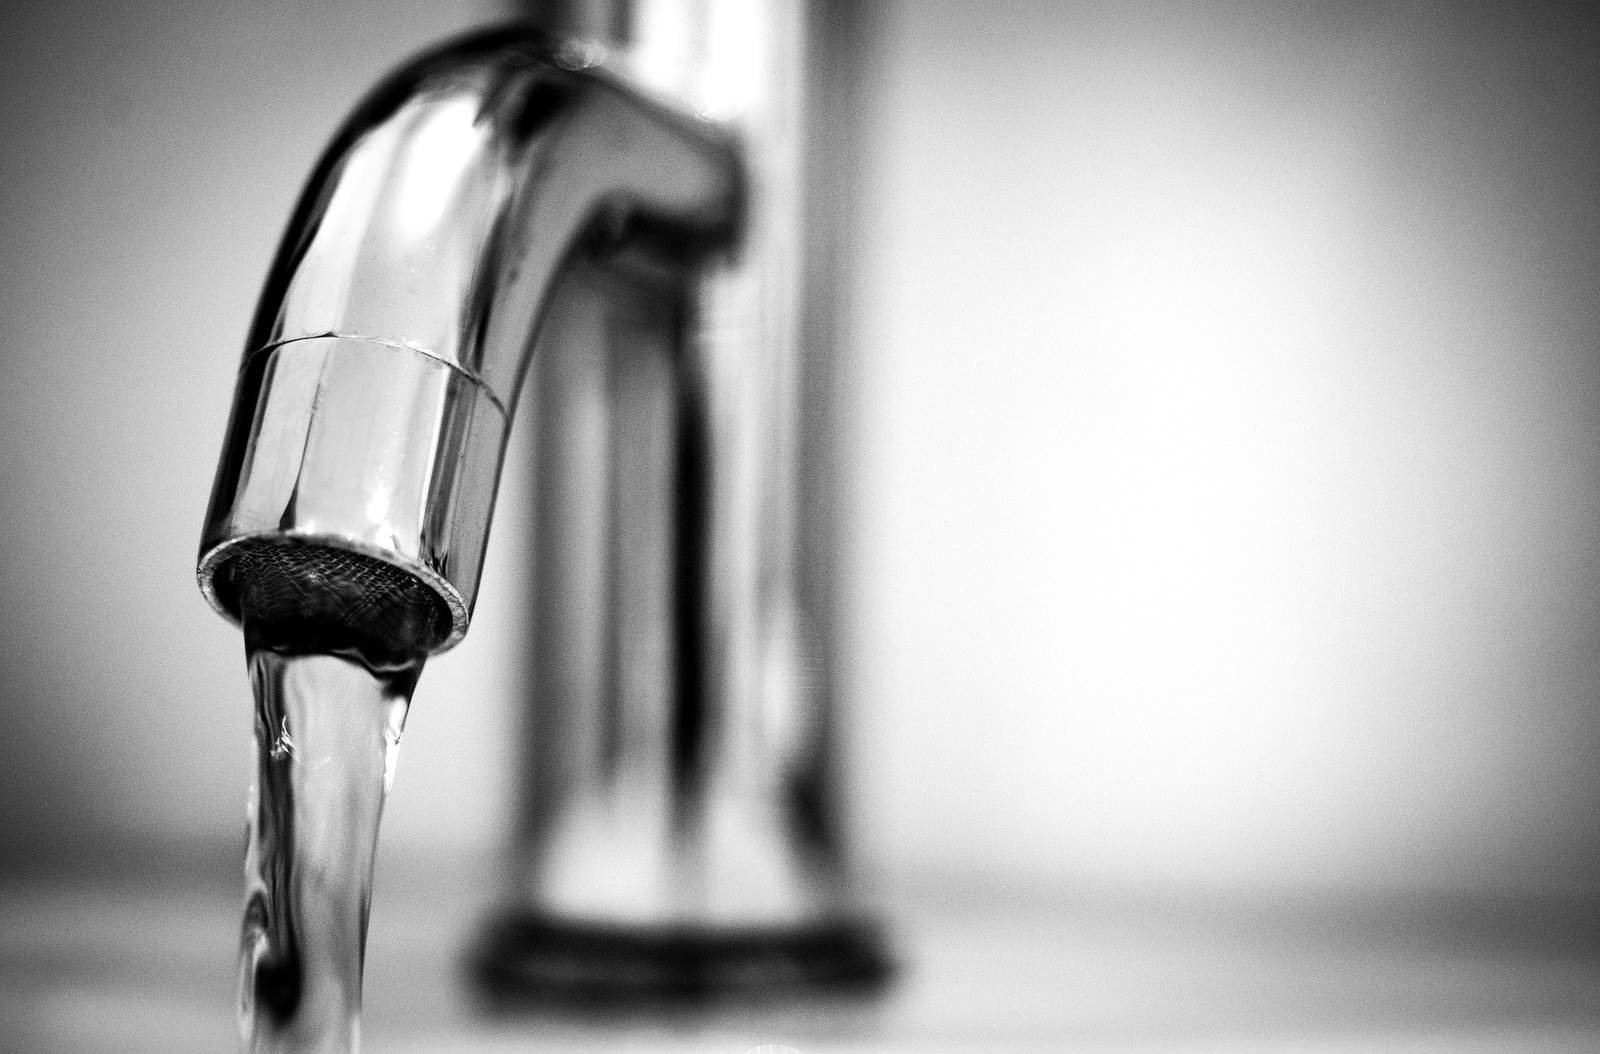 Seminole County lifts precautionary boil water advisory